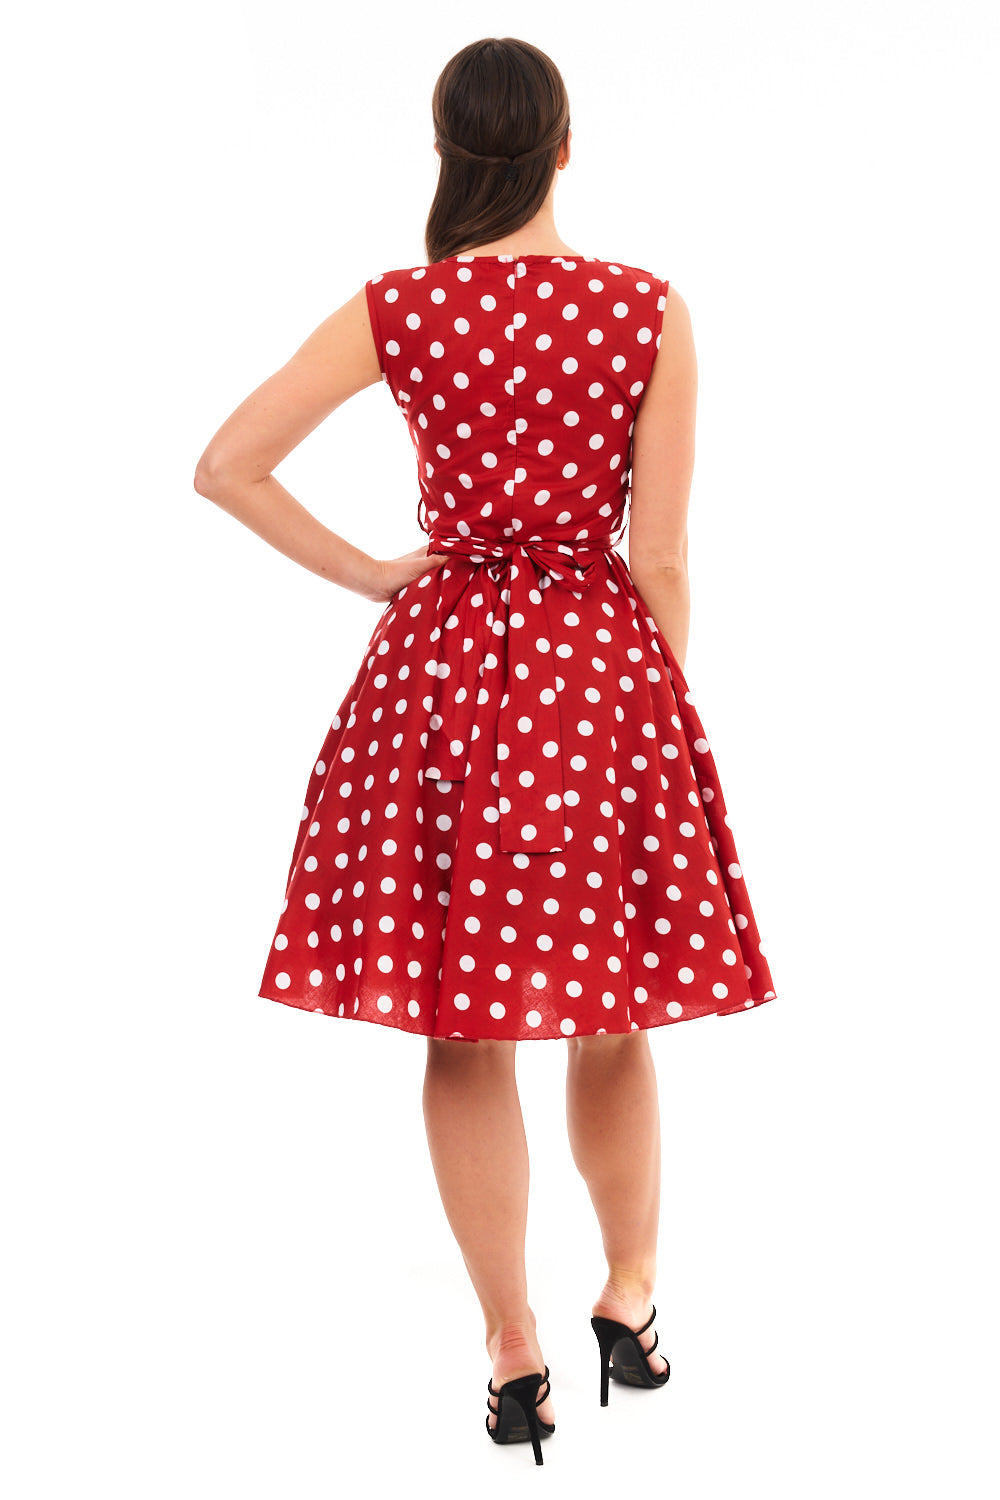 Ladies Retro Vintage 1940's /1950s Inspired Polka Dot Dress in Red